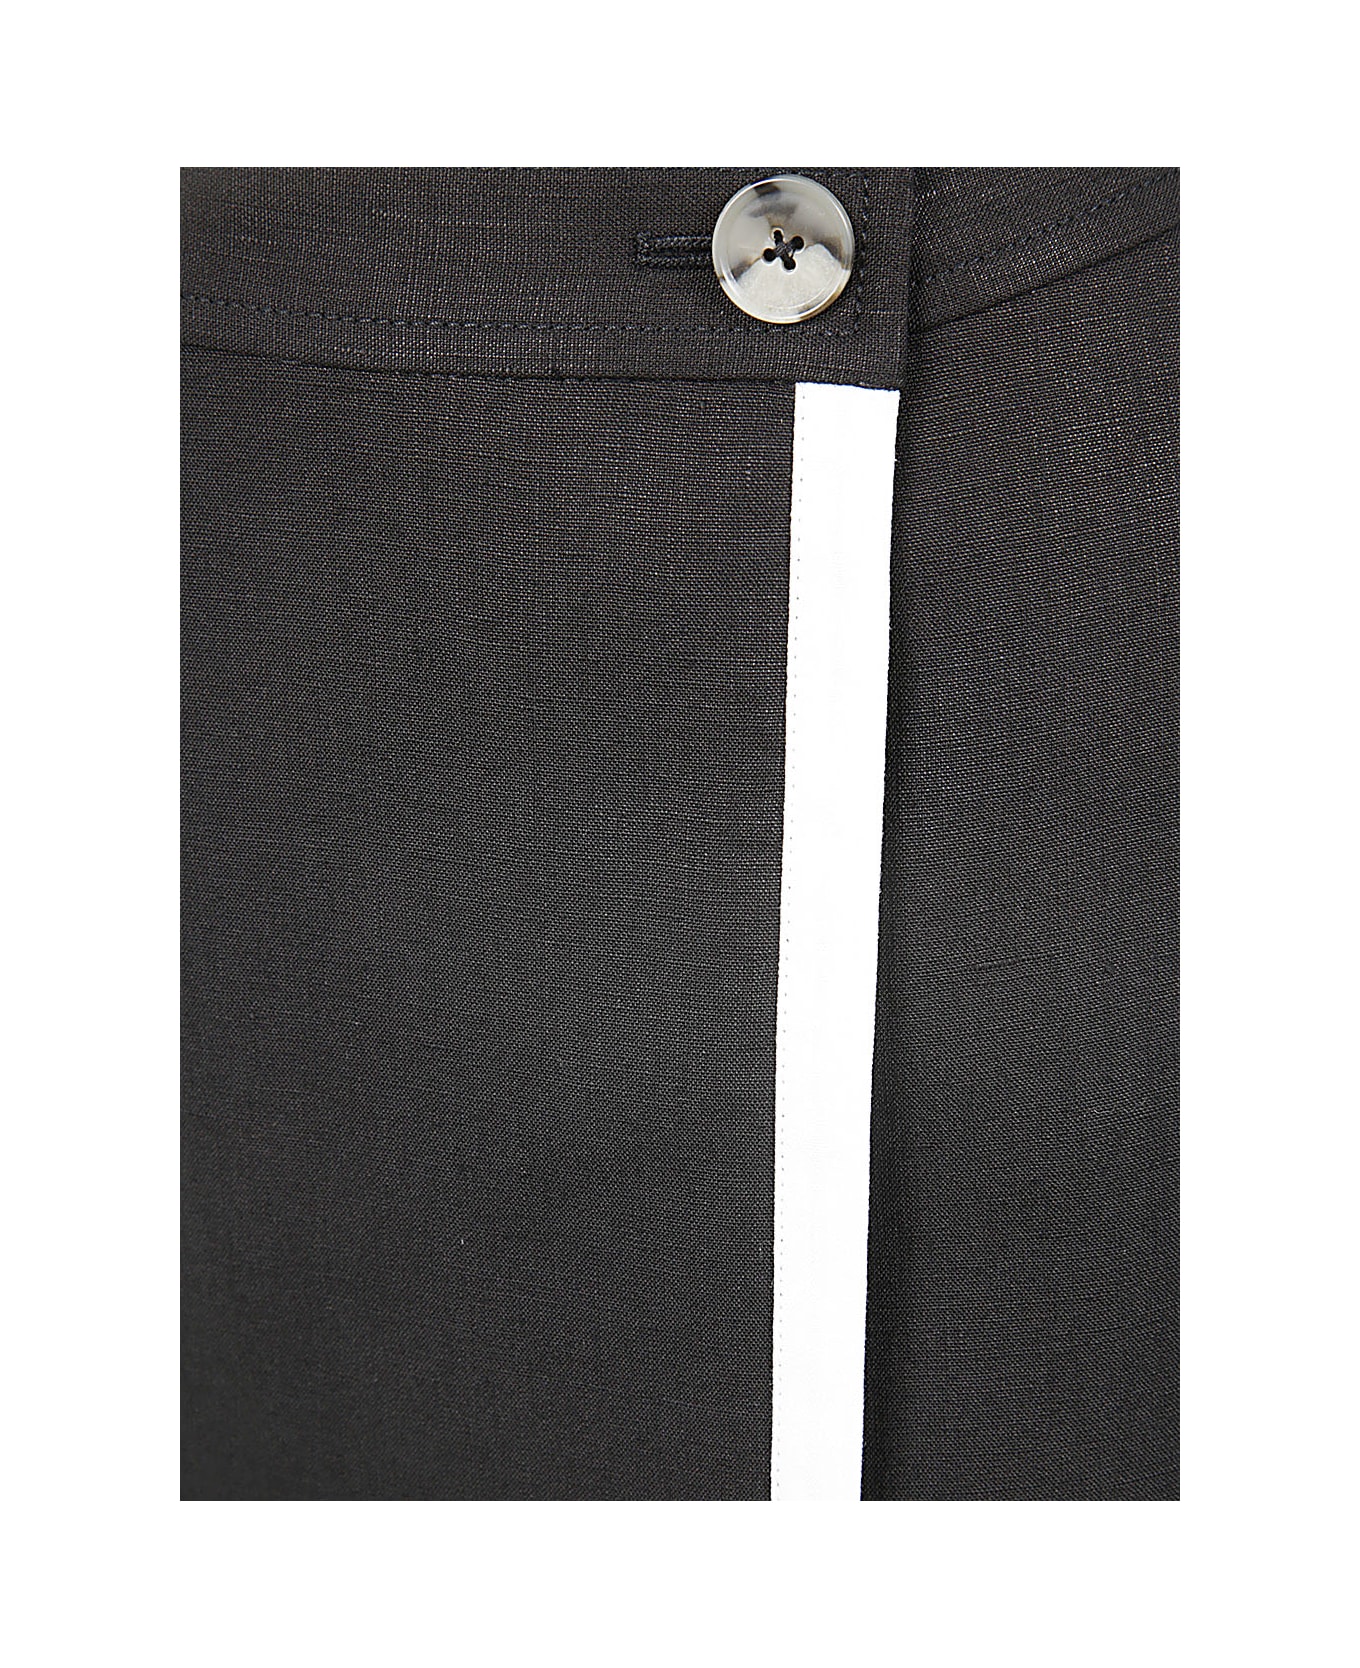 Paul Smith Wallet Skirt - Black